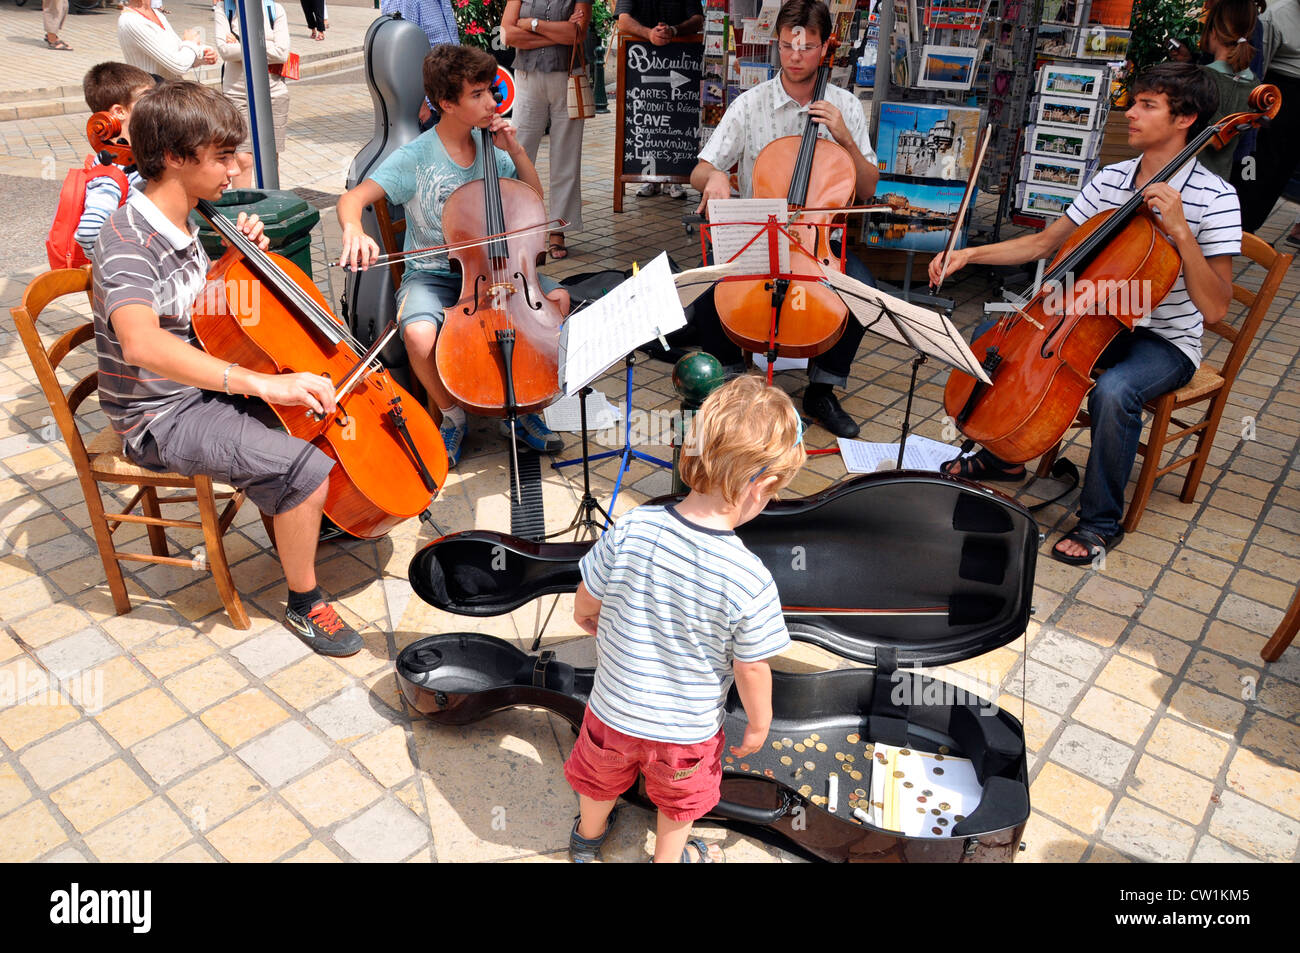 Straßenmusik cello Spieler - vier junge Männer - Durchführen der im Freien an einem warmen Sommertag in der Stadt Amboise, Indre-et-Loire, Frankreich. Stockfoto